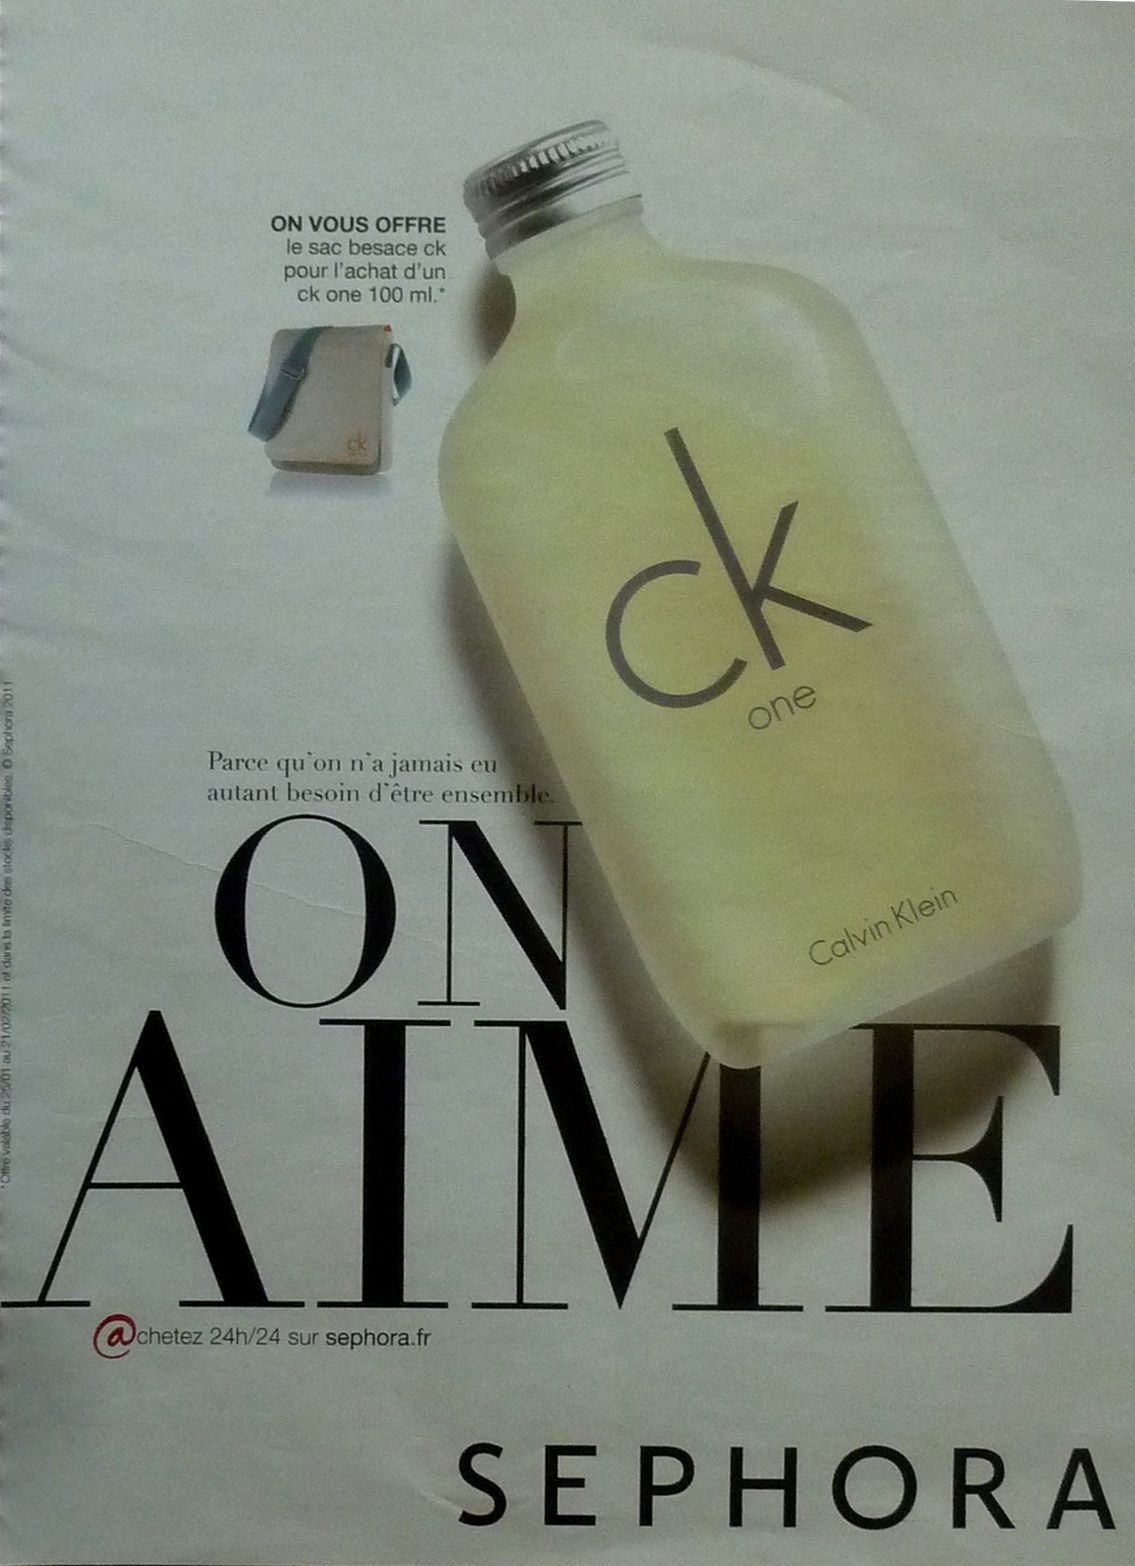 CK one de Calvin KLEIN - 1001 envies de parfums